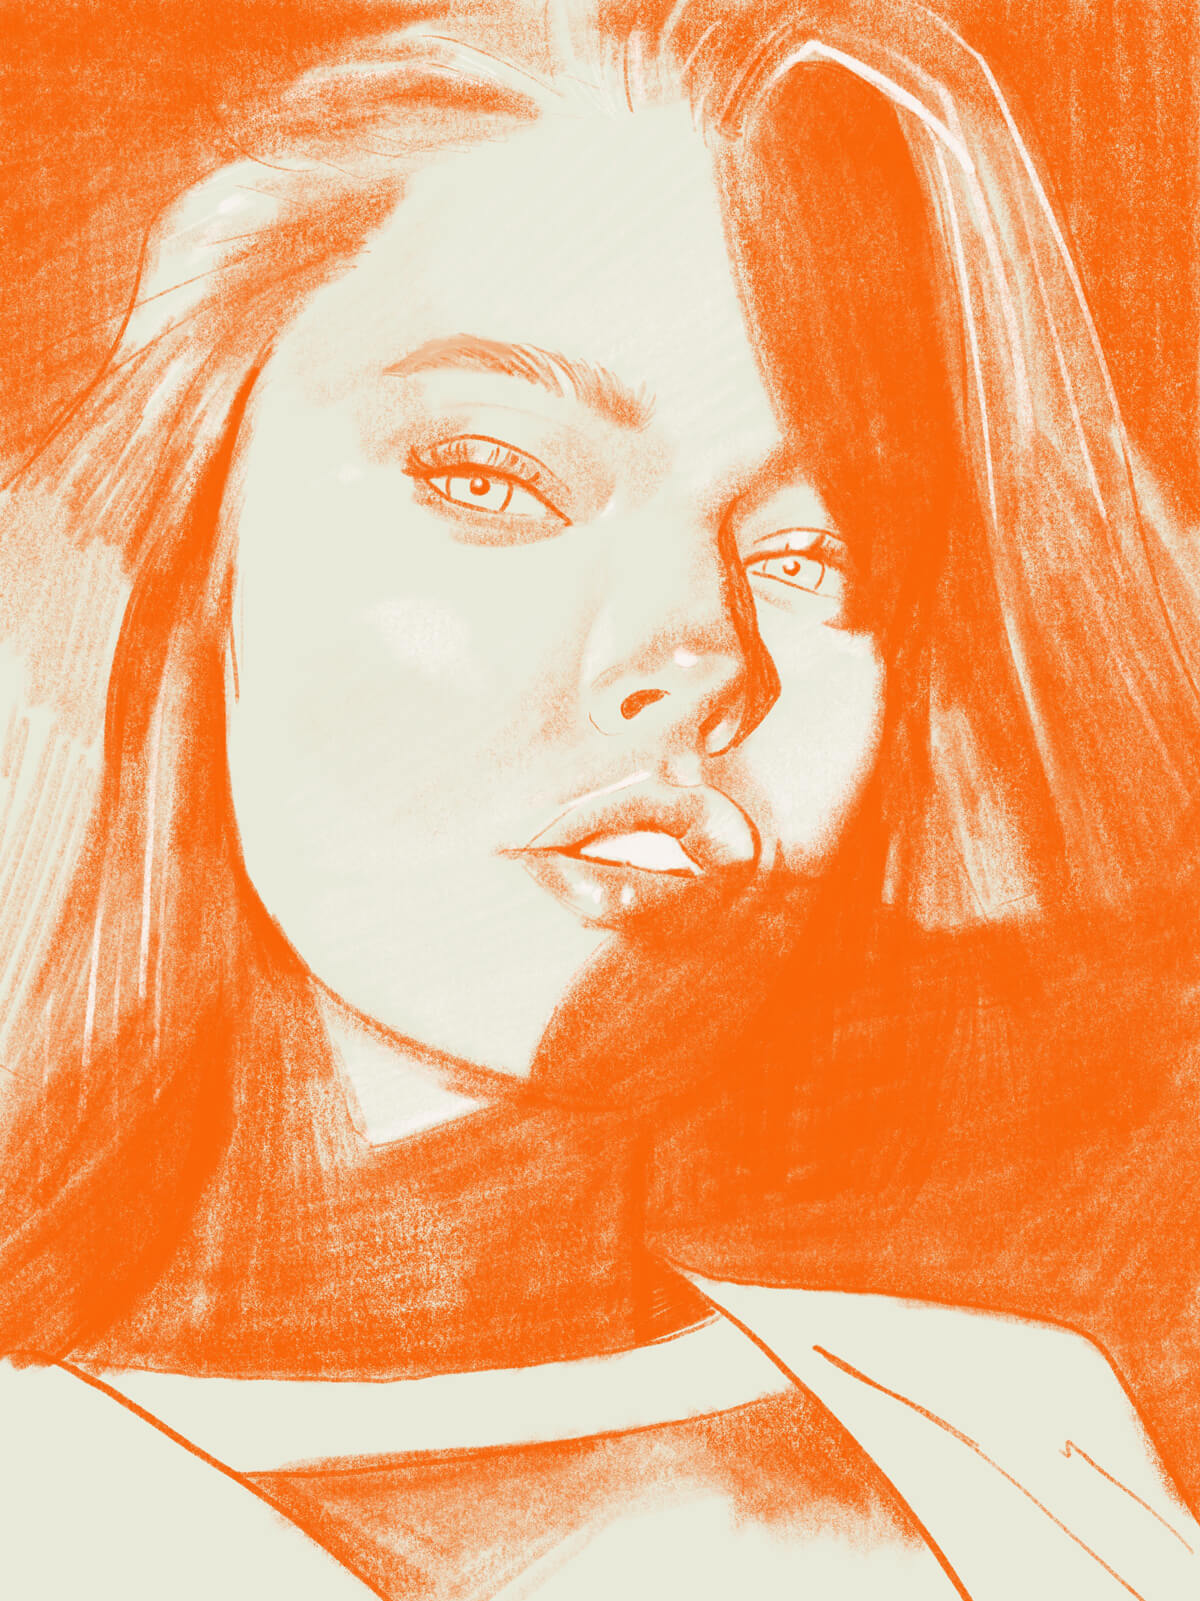 Digital Portrait: Michelle in Vibrant Orange